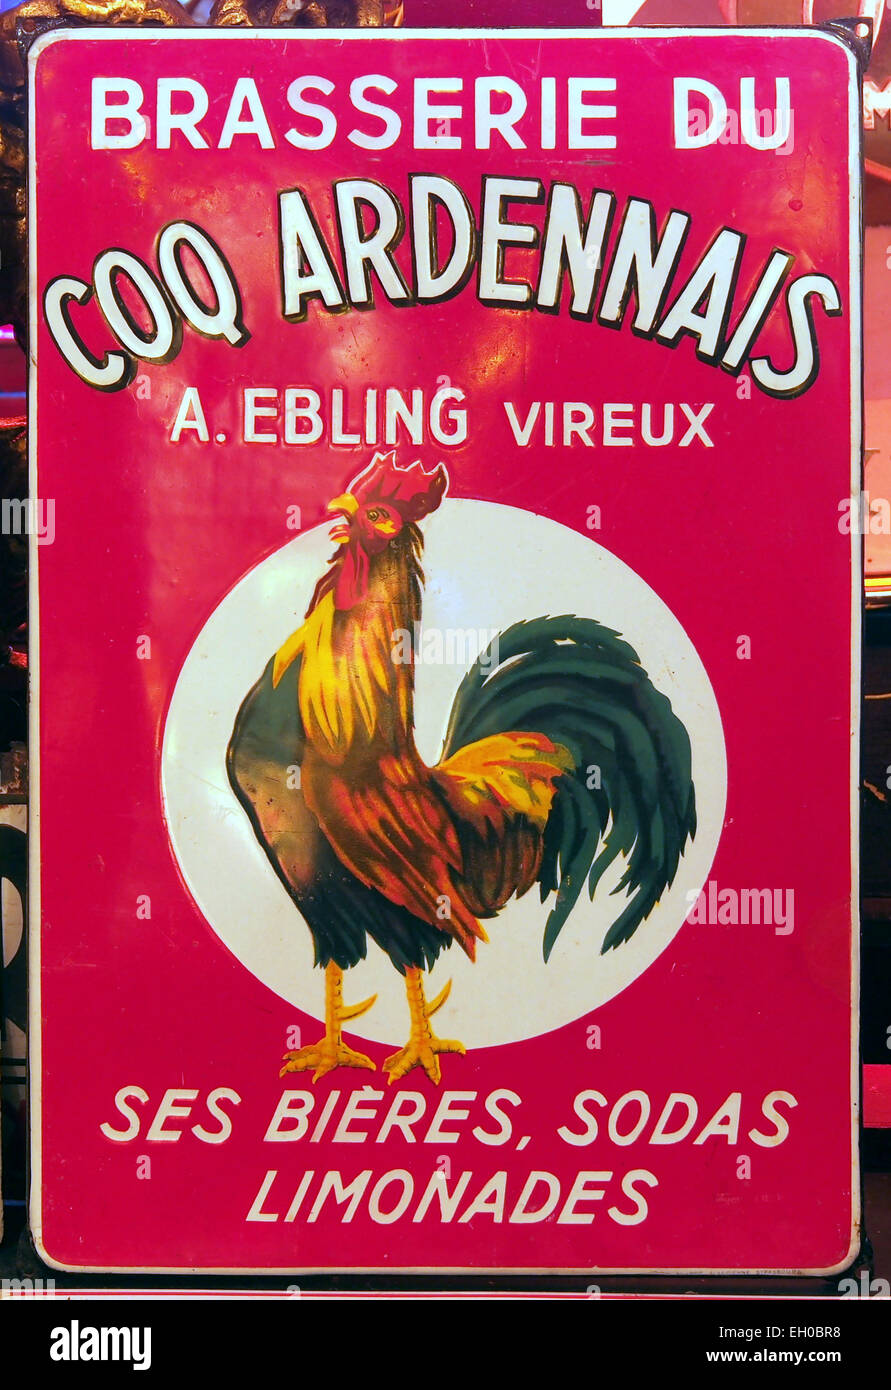 Brasserie du Coq Ardennais, UN Ebling vireux, émail enseigne publicitaire Banque D'Images